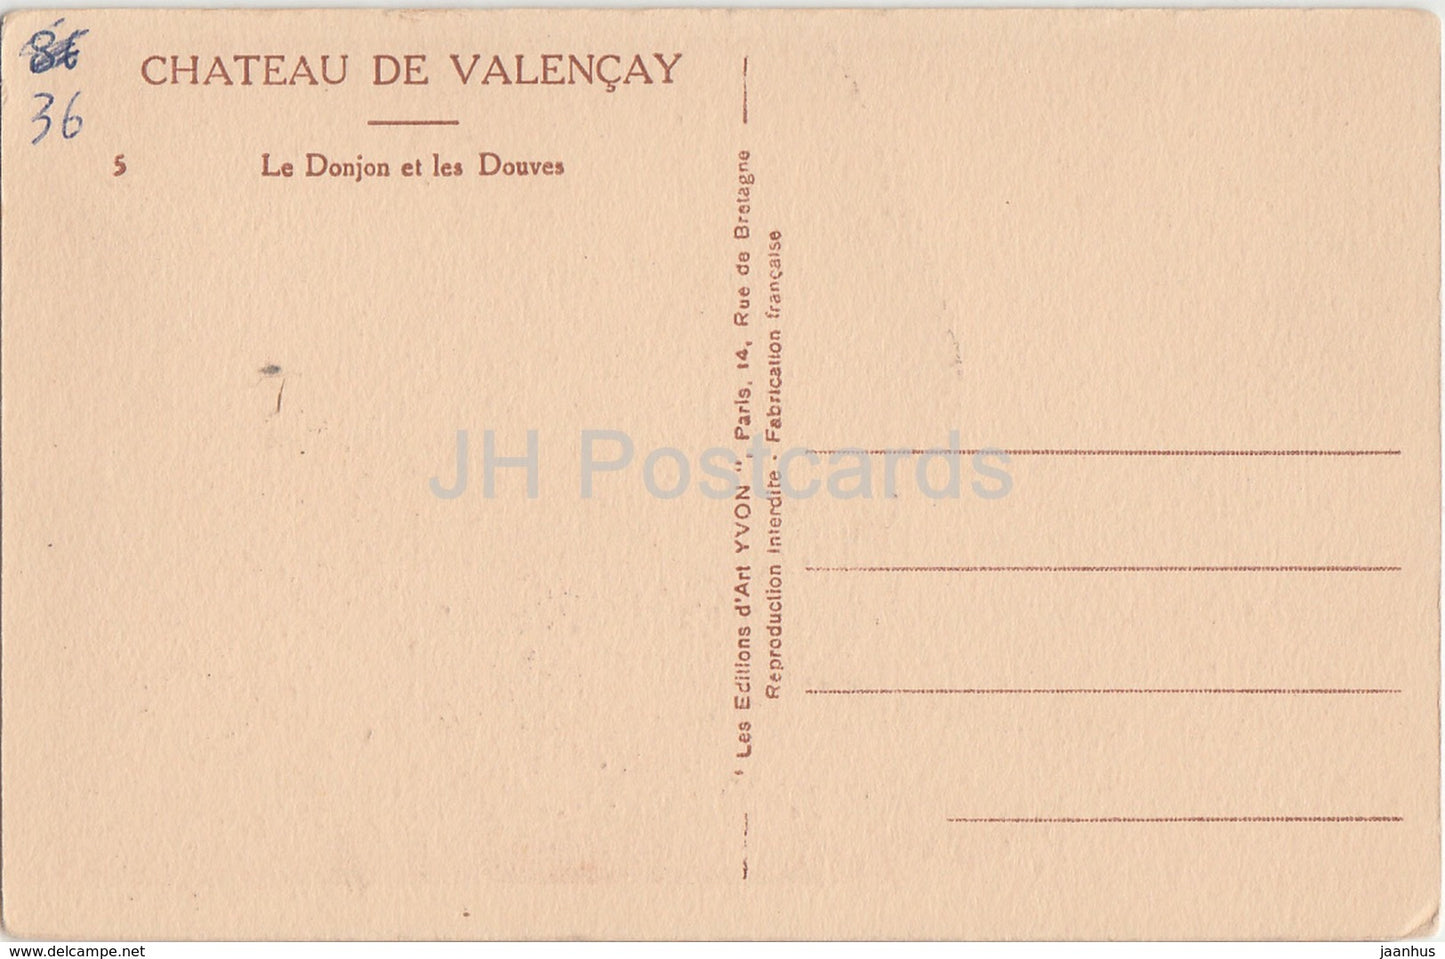 Chateau de Valencay - Le Donjon et les Douves - castle - old postcard - France - unused